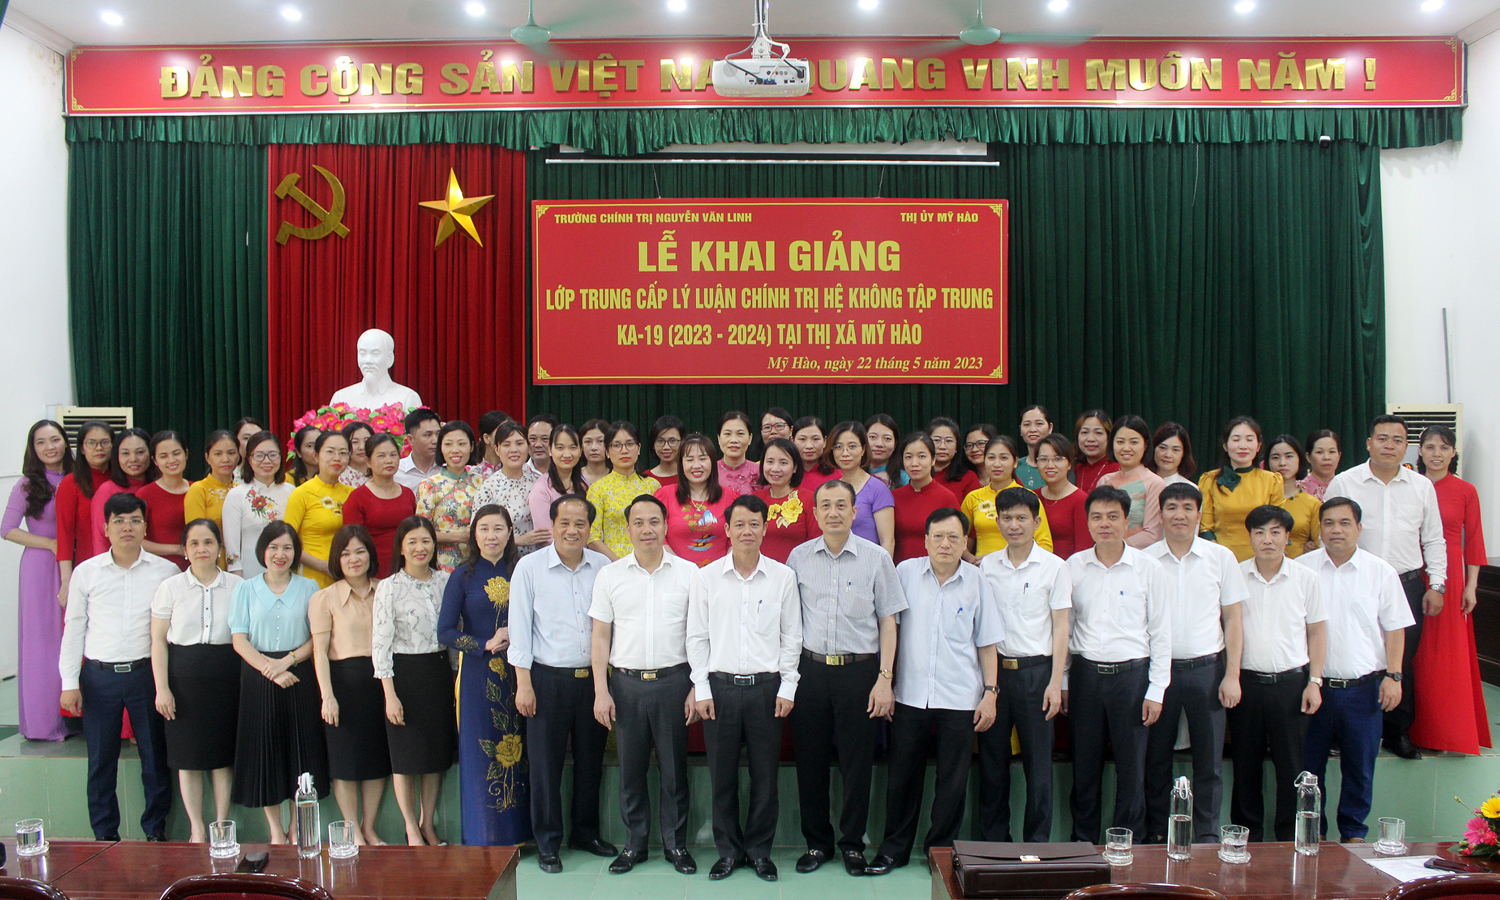 Khai giảng lớp Trung cấp lý luận Chính trị hệ không tập trung KA-19 (2023-2024) tại thị xã Mỹ Hào